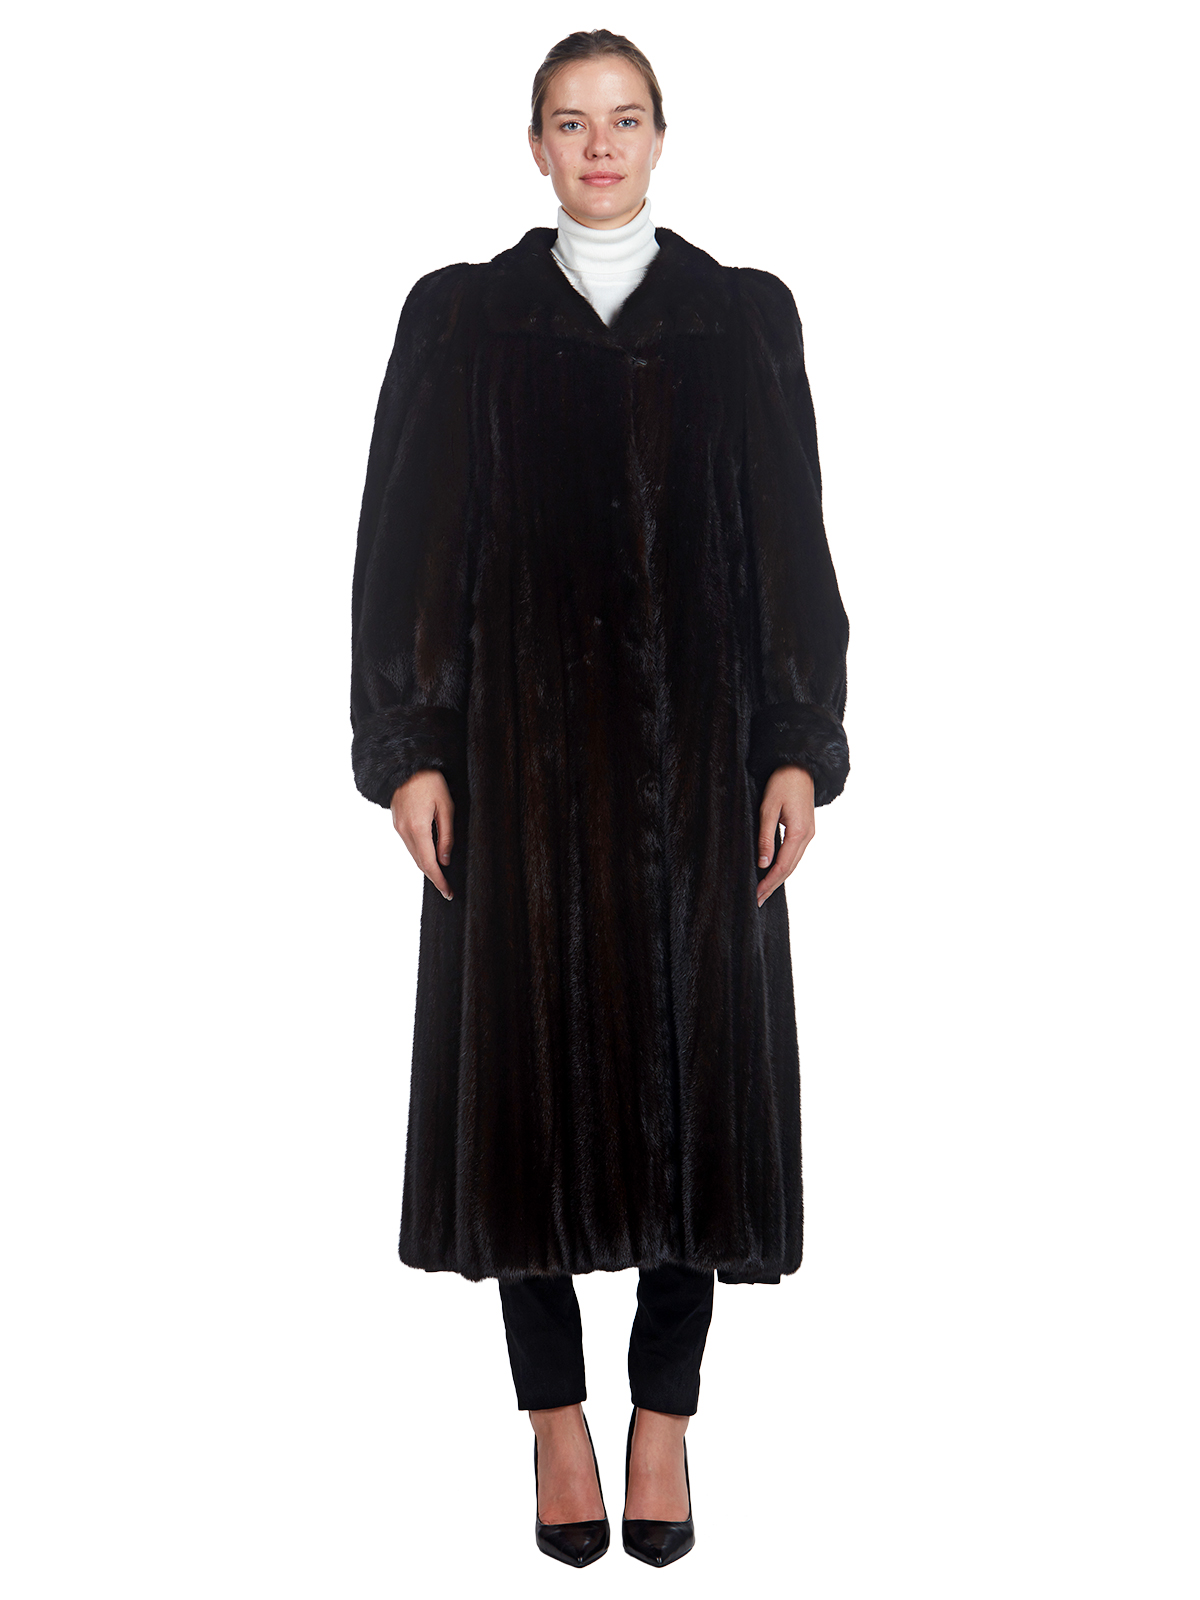 Christian Dior Ranch Mink Fur 7/8 Coat - Women's Fur Coat - XL| Estate Furs